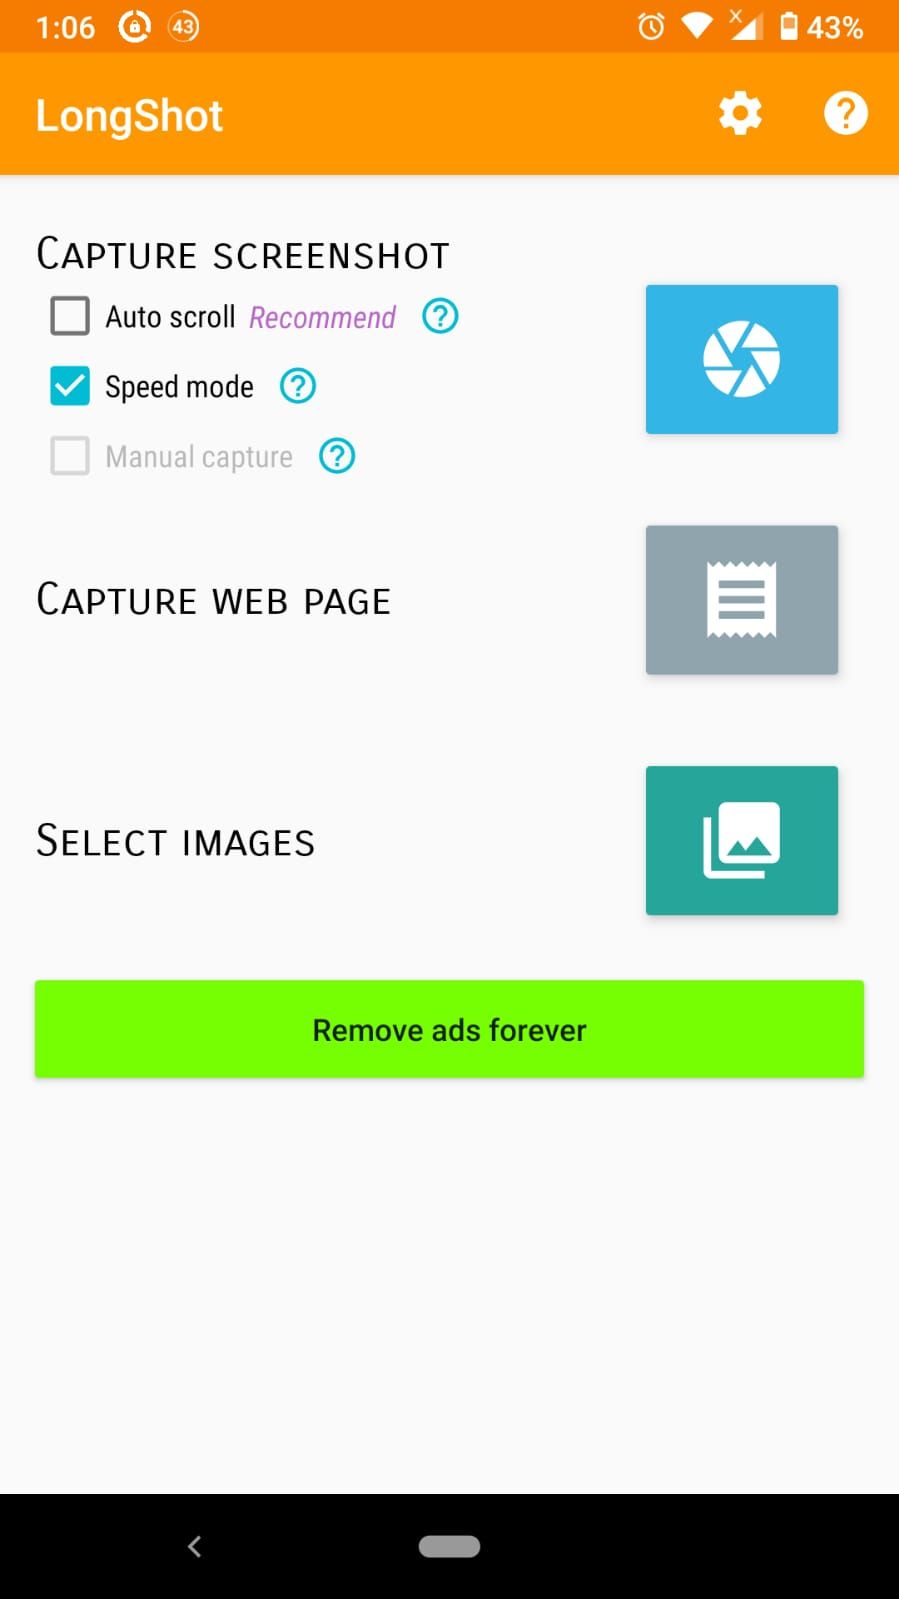 longshot app main menu screenshot